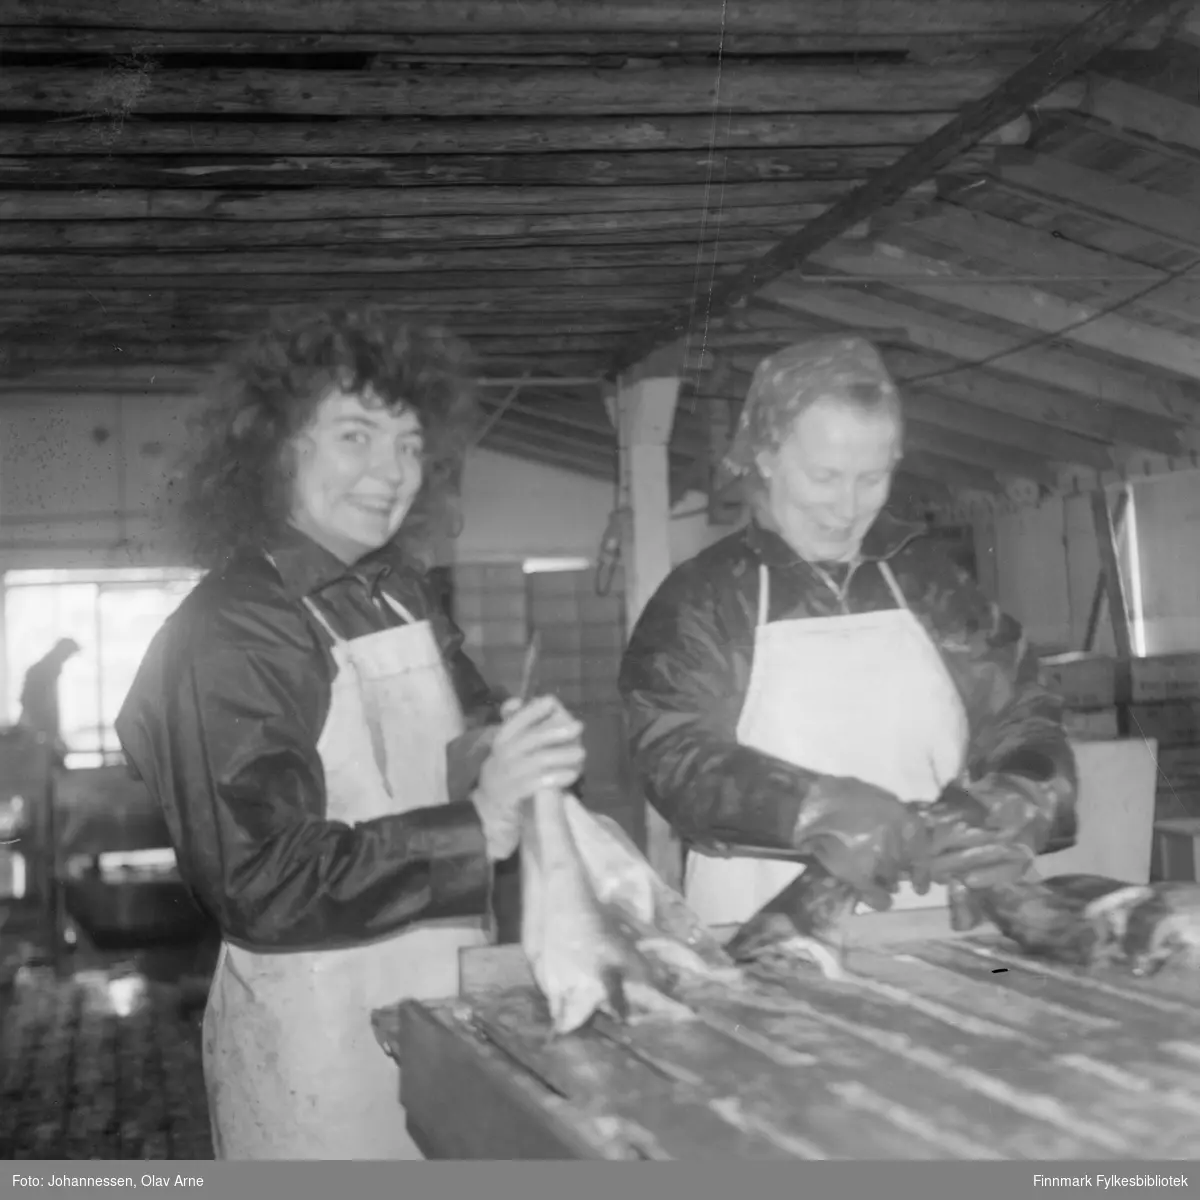 På fiskebruket i Syltefjord (Finnmark), sløyeskuret.  Til venstre Tove Pettersen (født 1955) og Jenny Larsen (1929 - 2007) 

De sperrer fisk. Foto tatt rundt 1973/74.